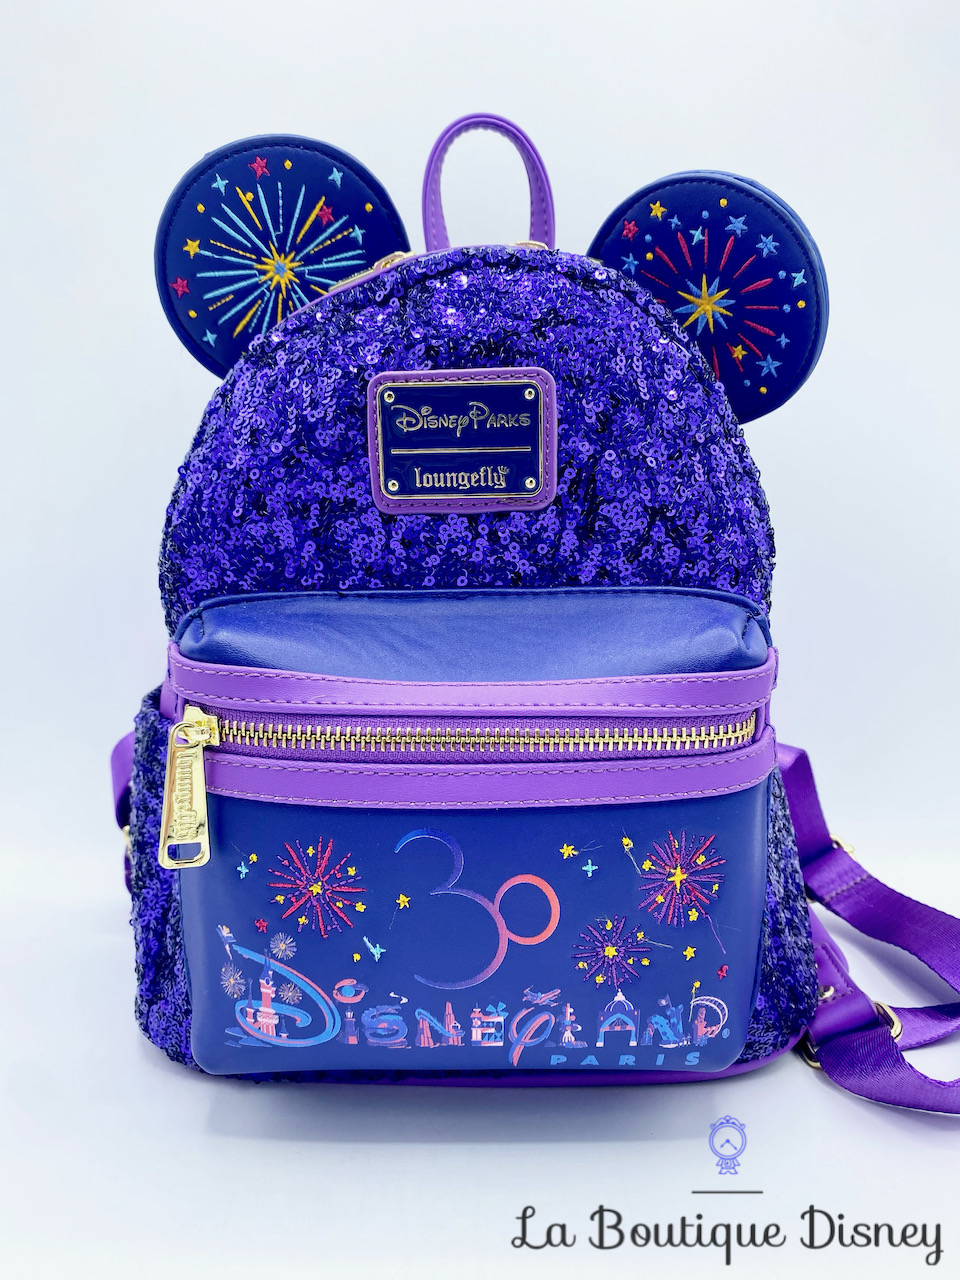 Disney stylo 4 couleurs Bic Château Disneyland Paris - Disneyland  Resort/Papeterie - Magical Park Shop